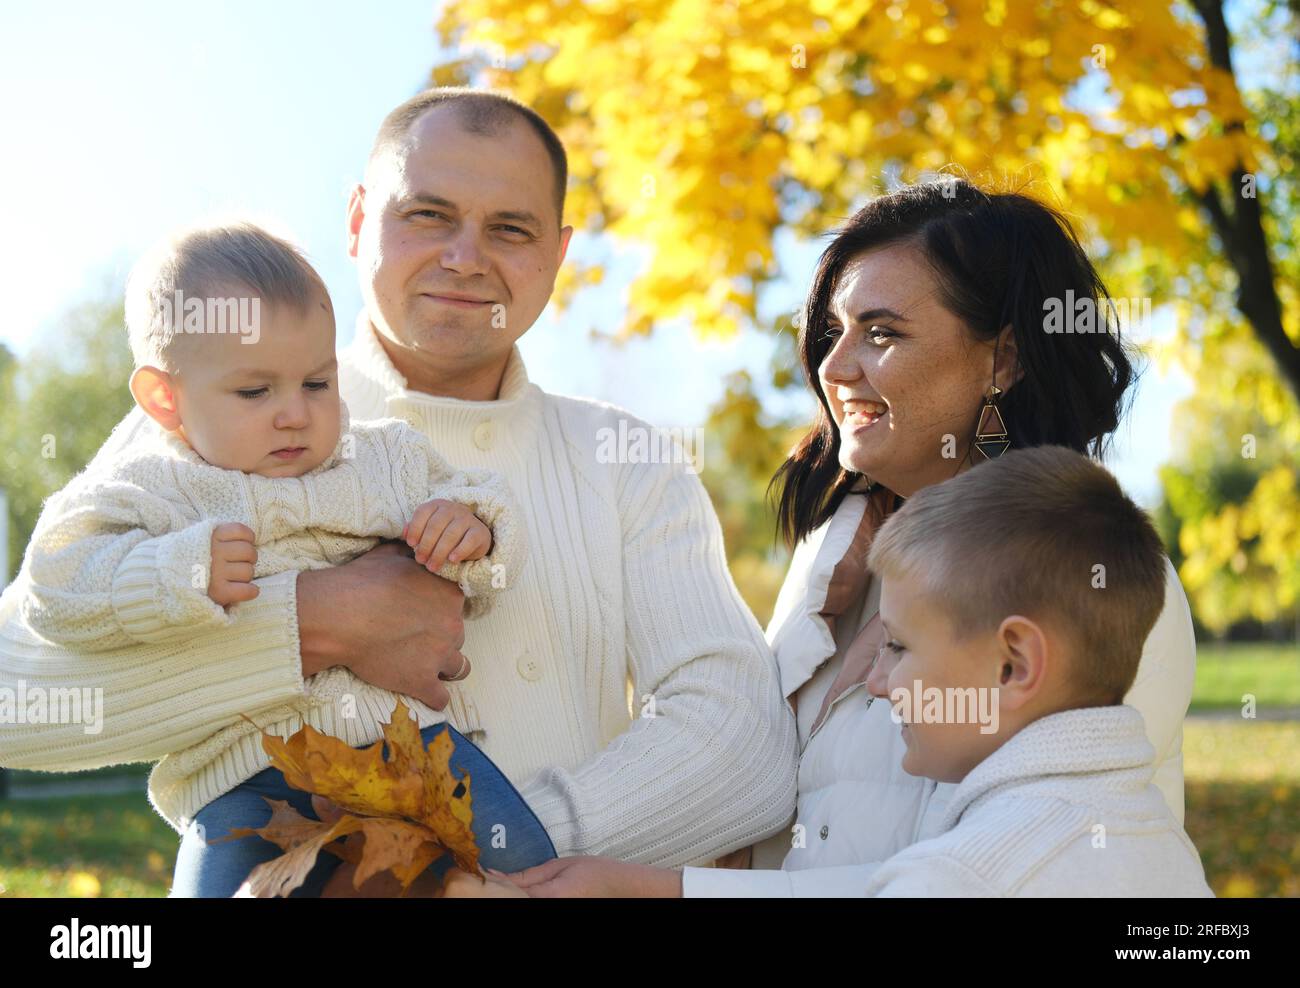 Eine glückliche vierköpfige Familie verbringt Zeit im Herbstpark. Mutter und ältester Sohn schauen auf das jüngste Kind, Vater lächelt und schaut in die Kamera. Horizont Stockfoto